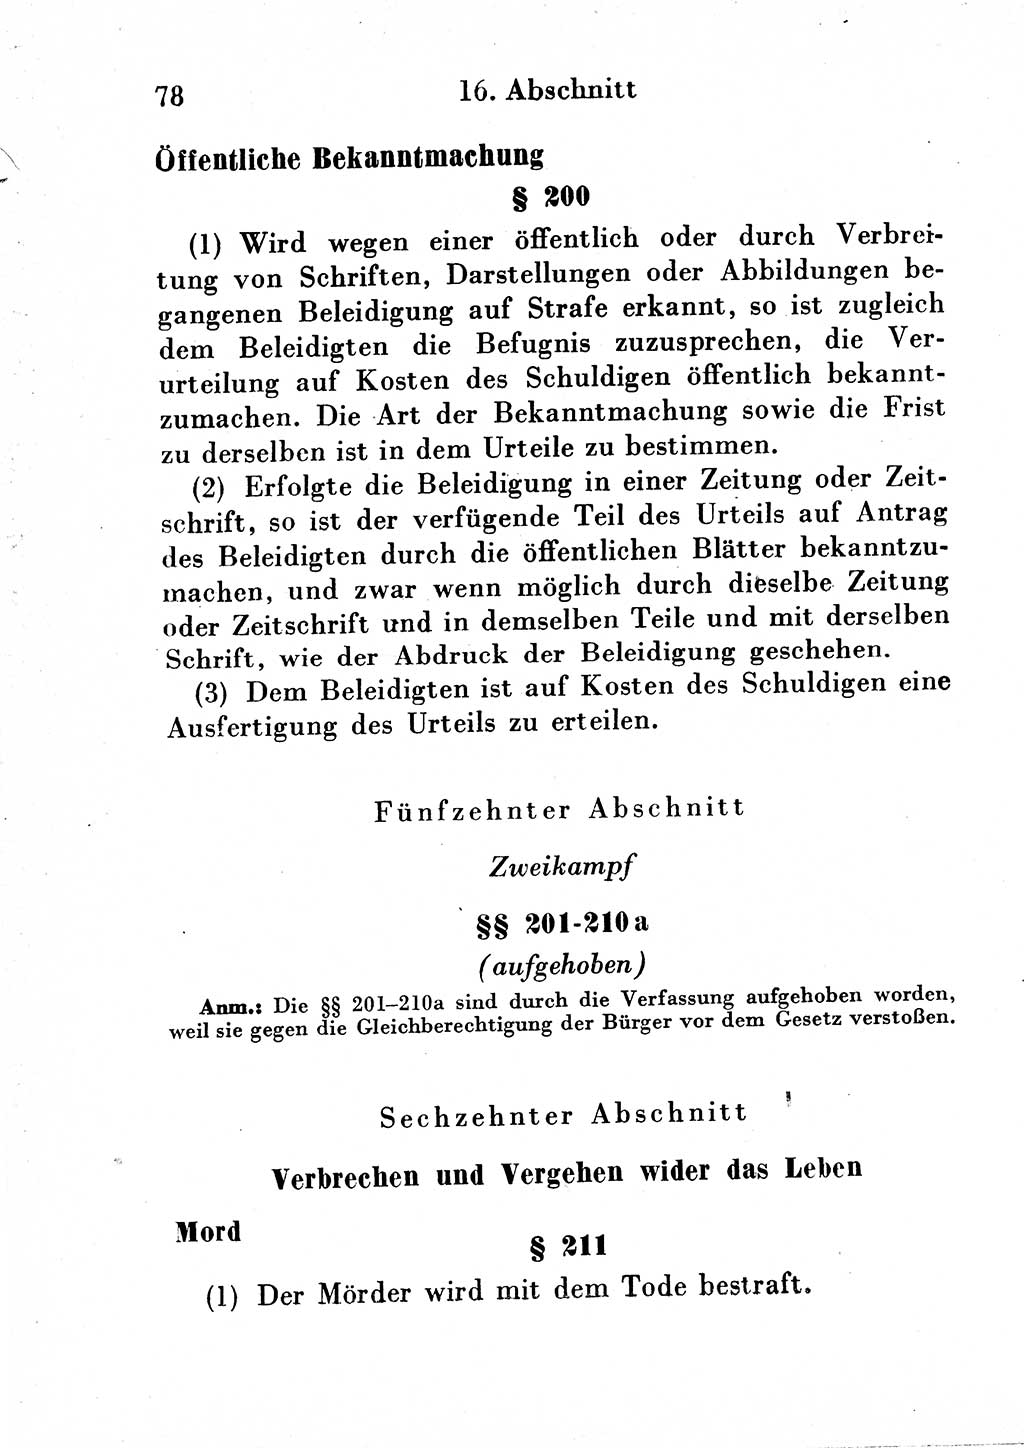 Strafgesetzbuch (StGB) und andere Strafgesetze [Deutsche Demokratische Republik (DDR)] 1954, Seite 78 (StGB Strafges. DDR 1954, S. 78)